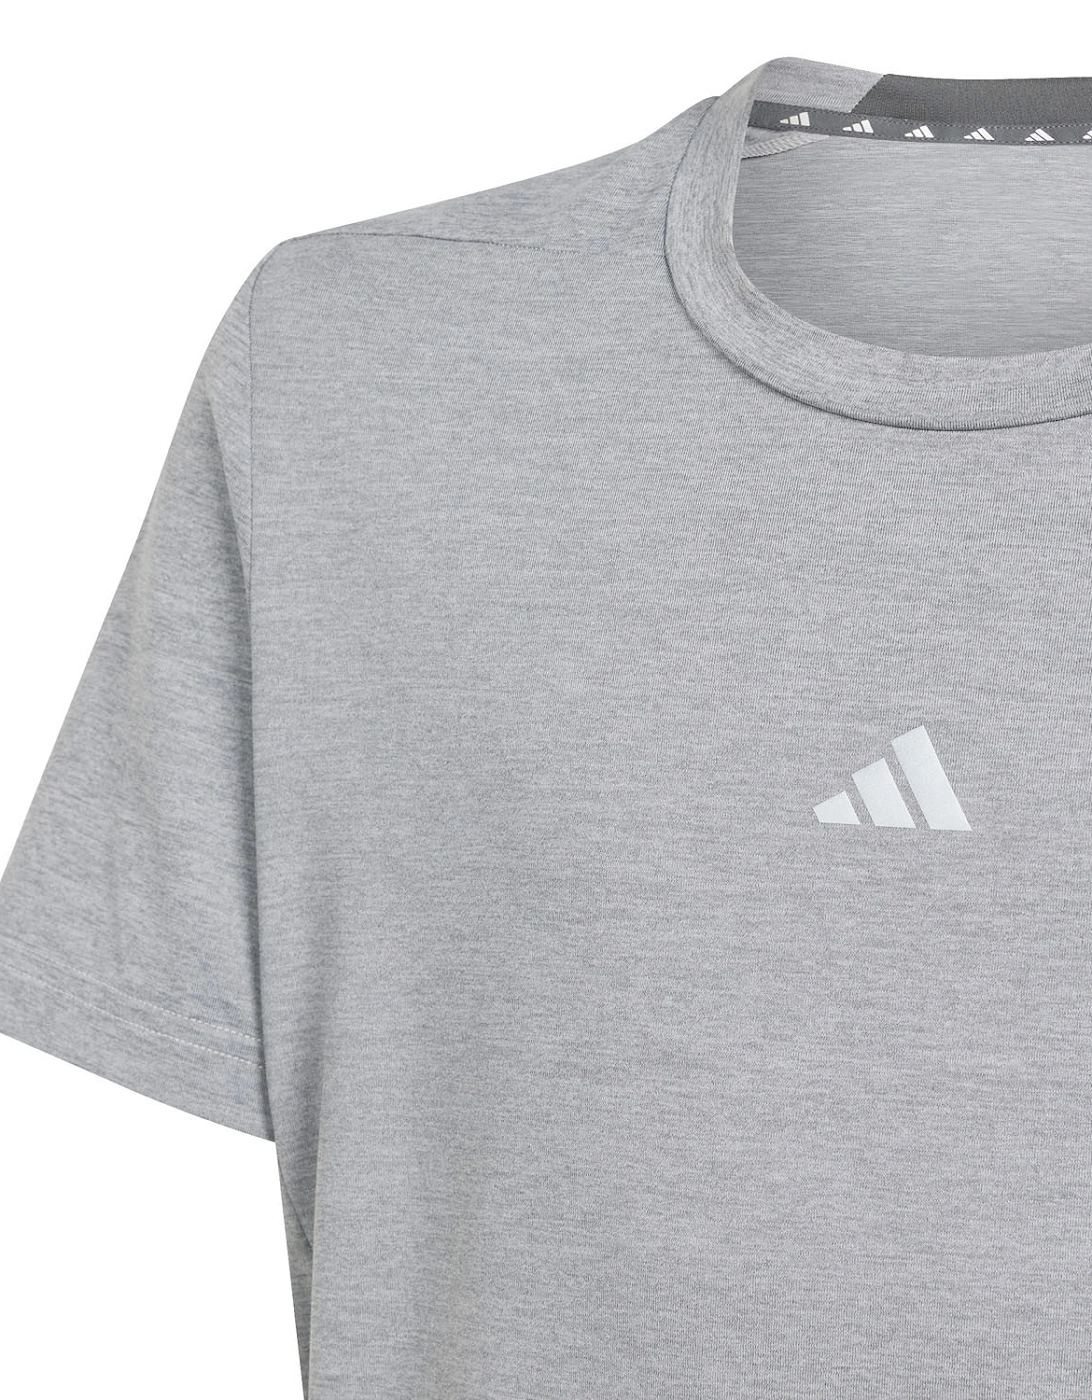 Juniors Heathered T-Shirt (Grey)